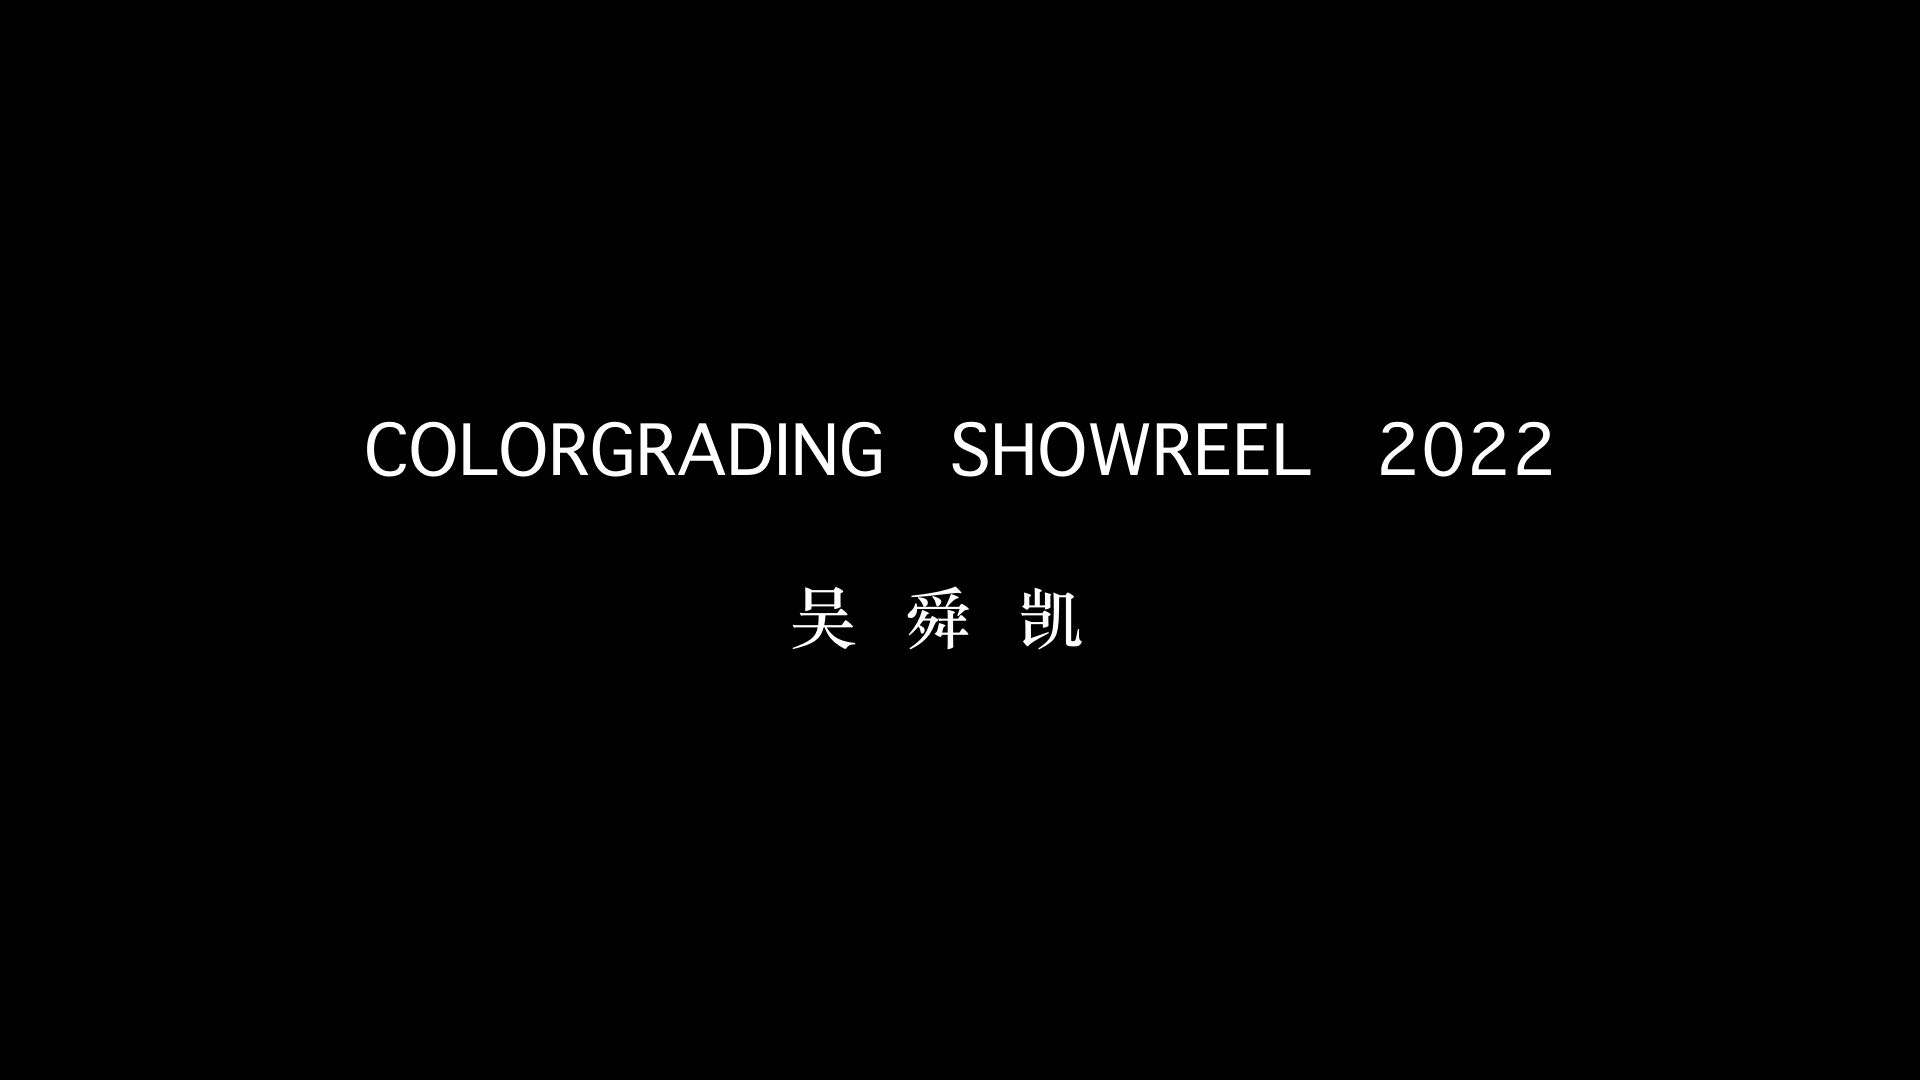 Colorgrading Showreel 2022